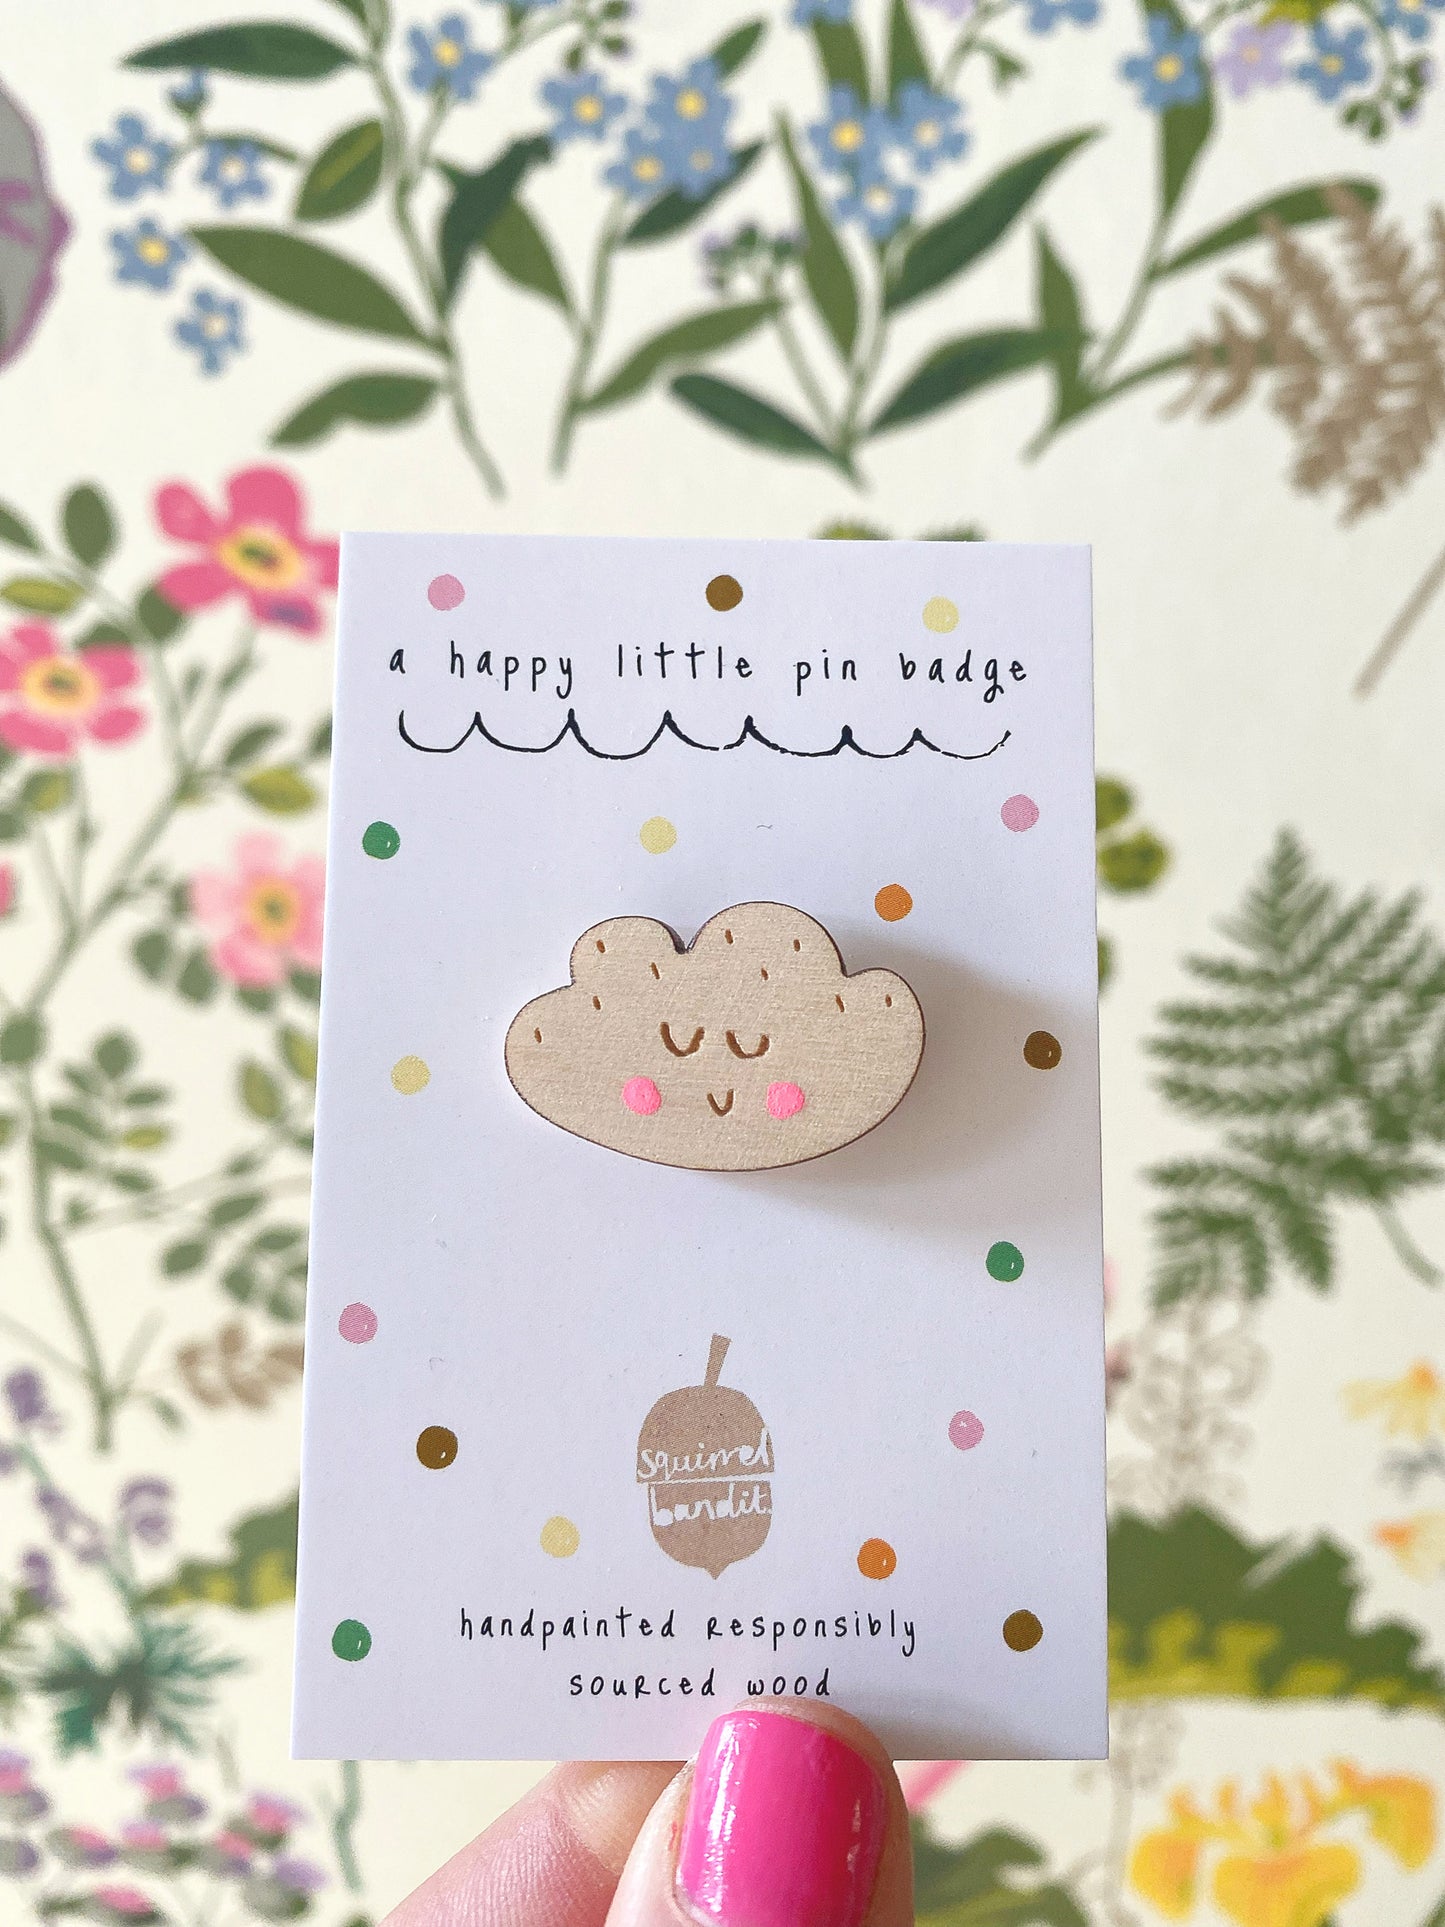 Smiley cloud pin badge